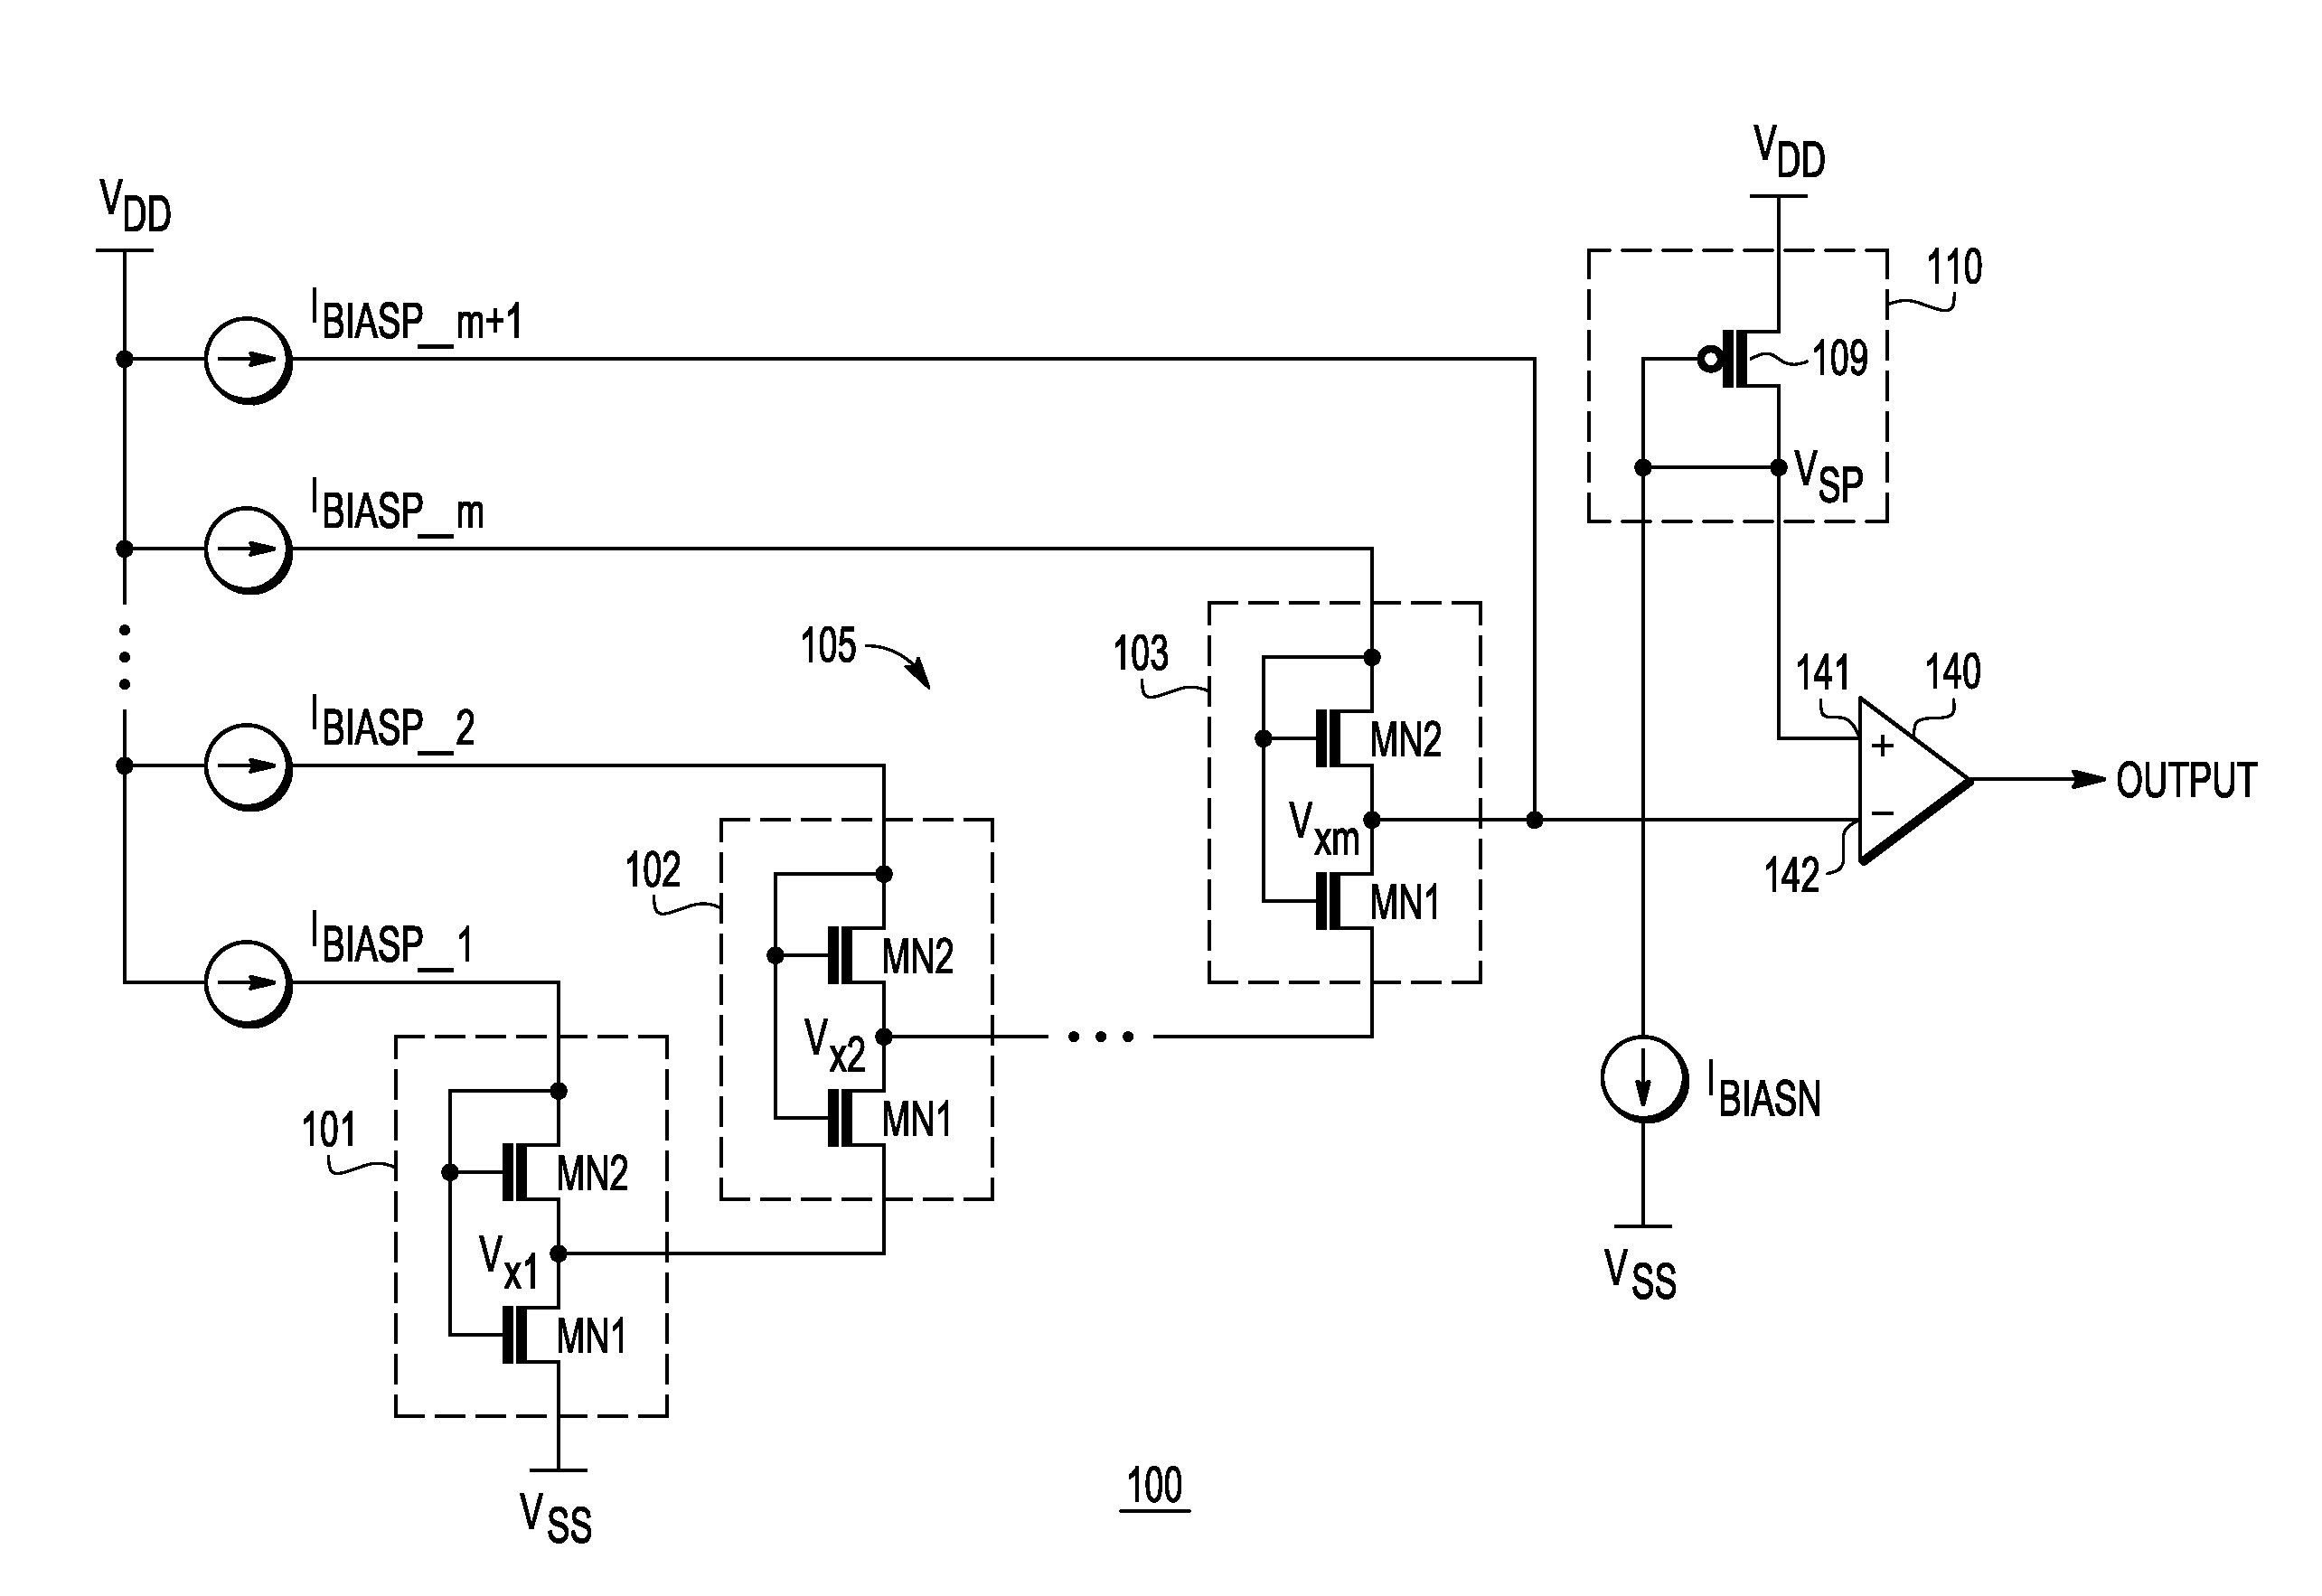 Low voltage detector